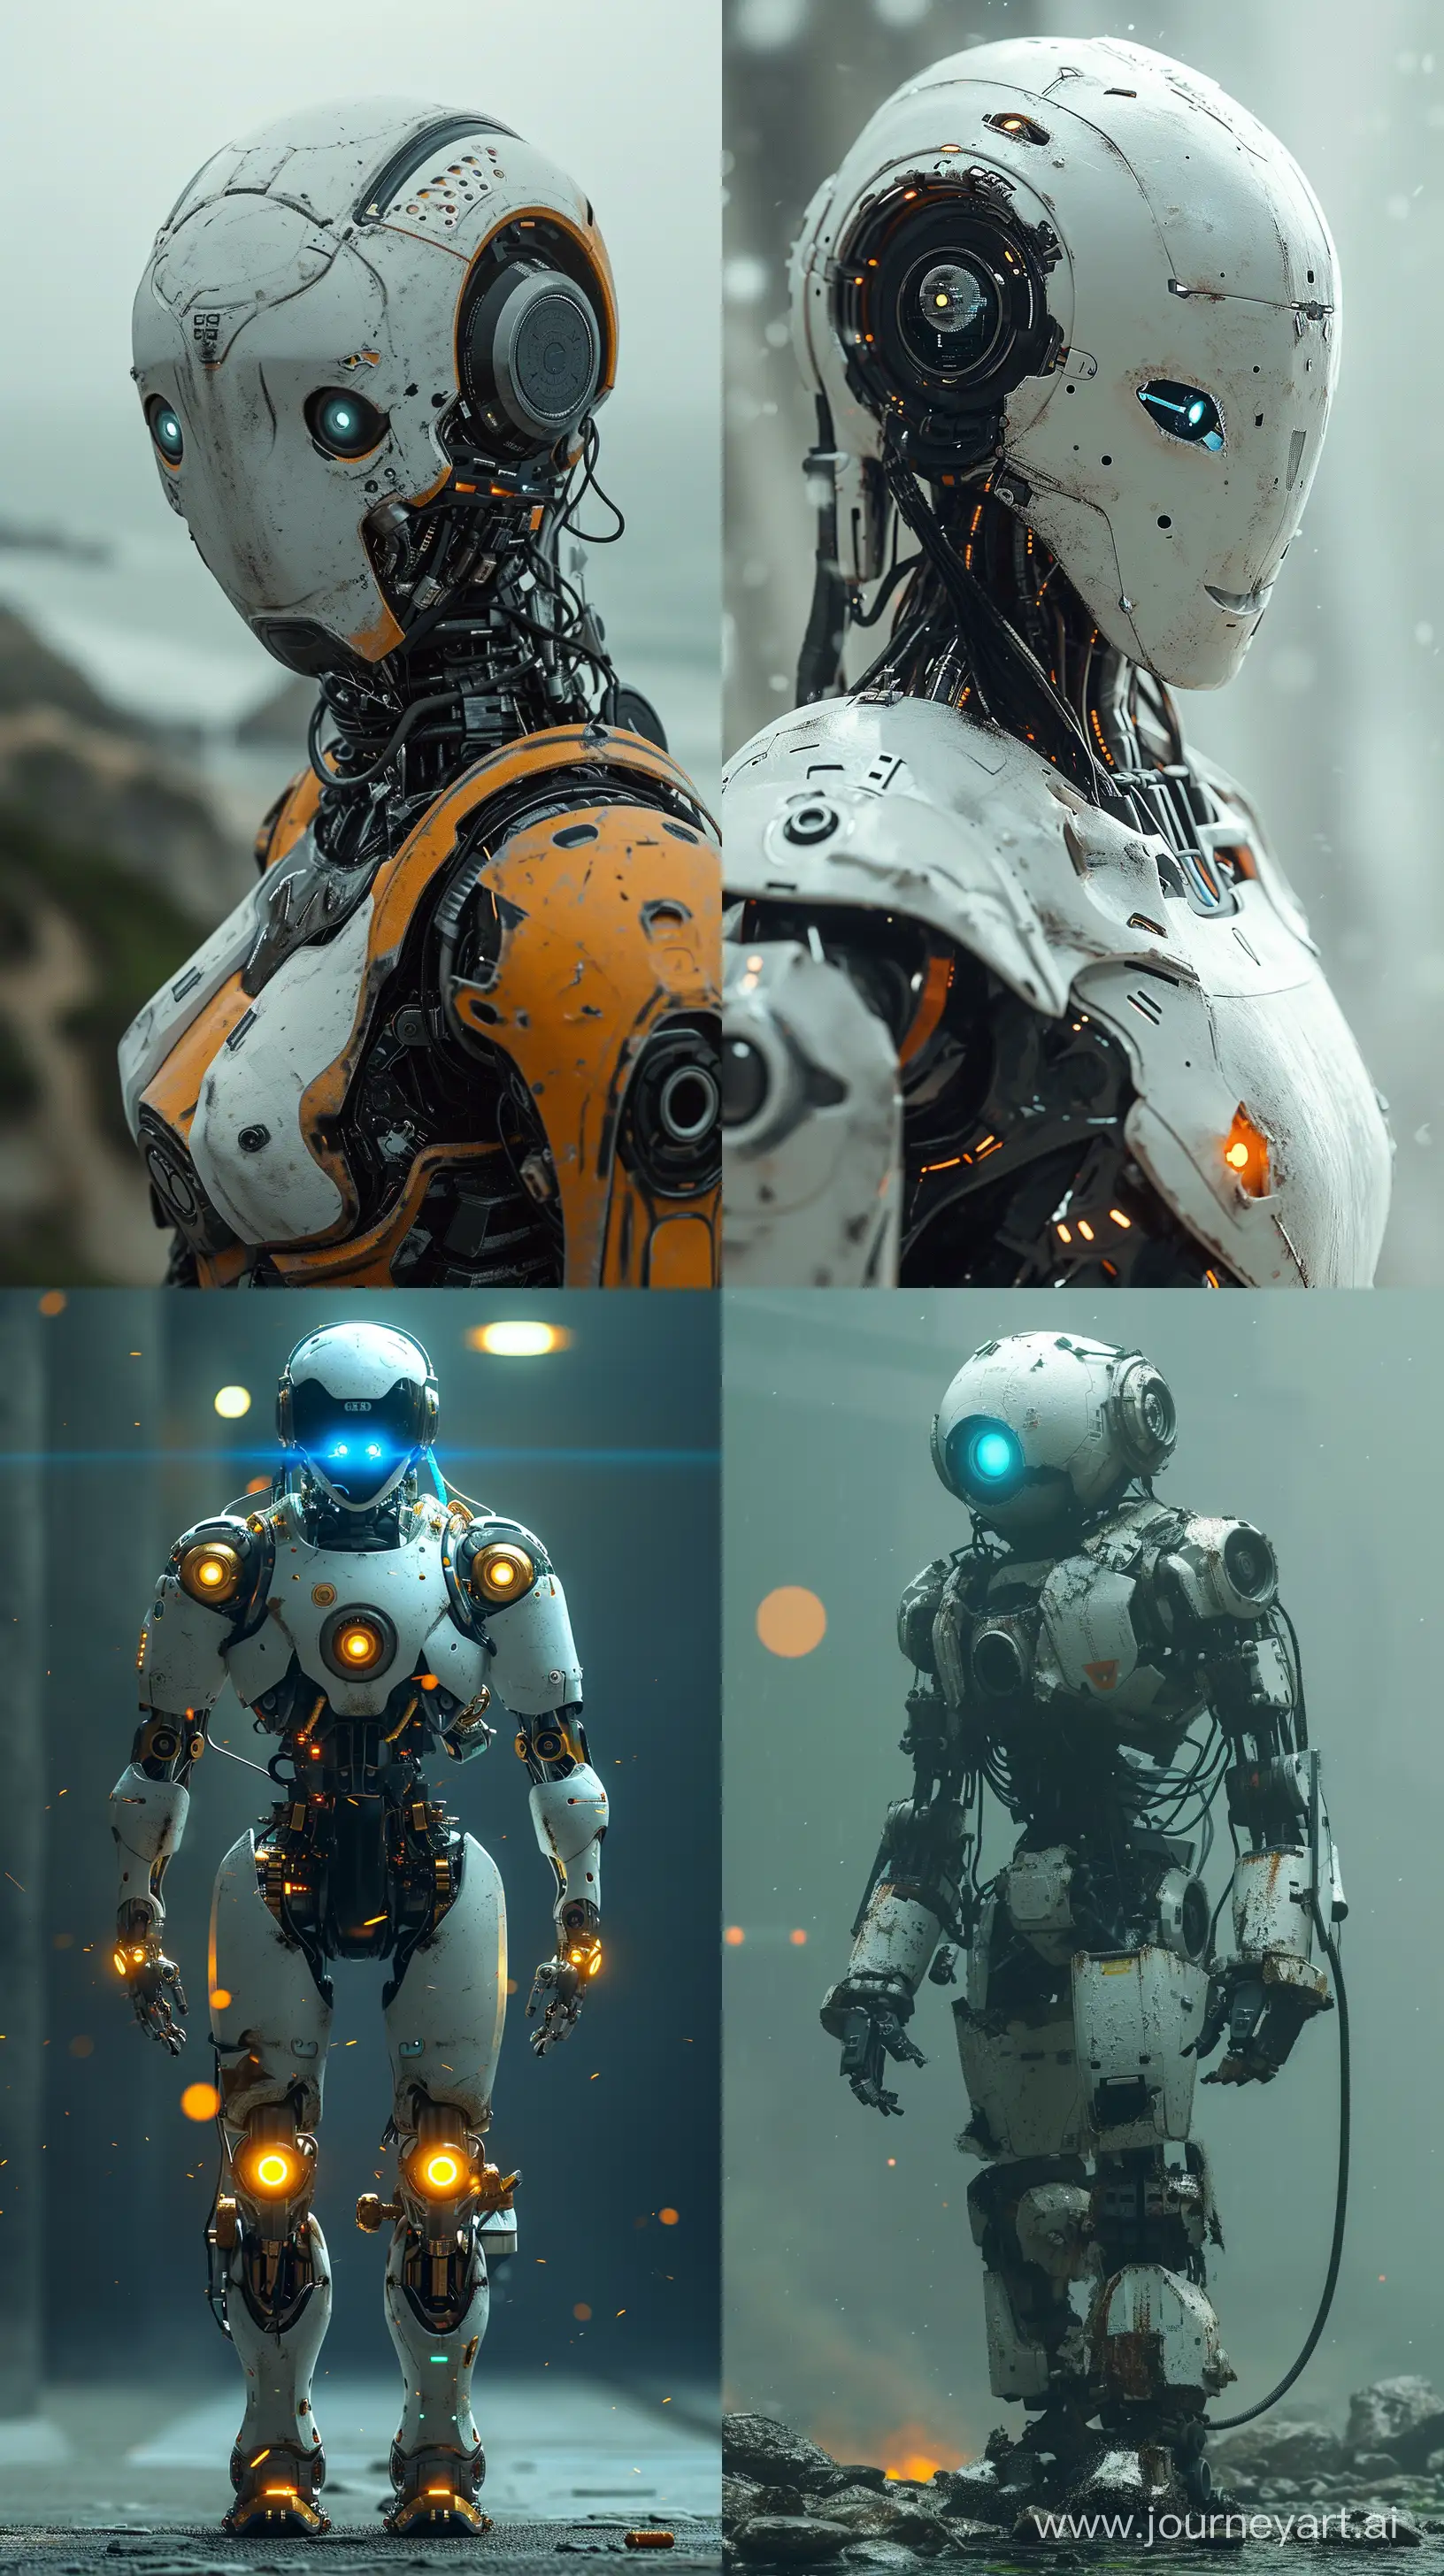 Робот со светящимися голубыми глазами стоит, робот сломанный::2, поломанный робот, стоит в полный рост, стоит в интересной позе, 8K::1.2, V-ray, realism::1.1, --s 300 --ar 9:16